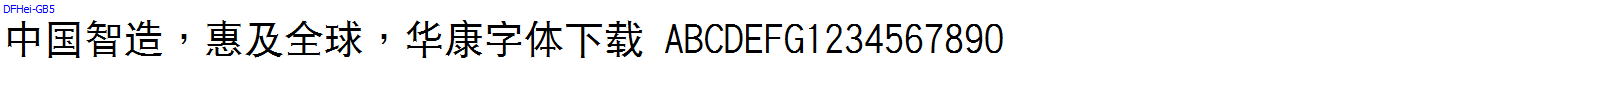 華康字體DFHei-GB5.TTF